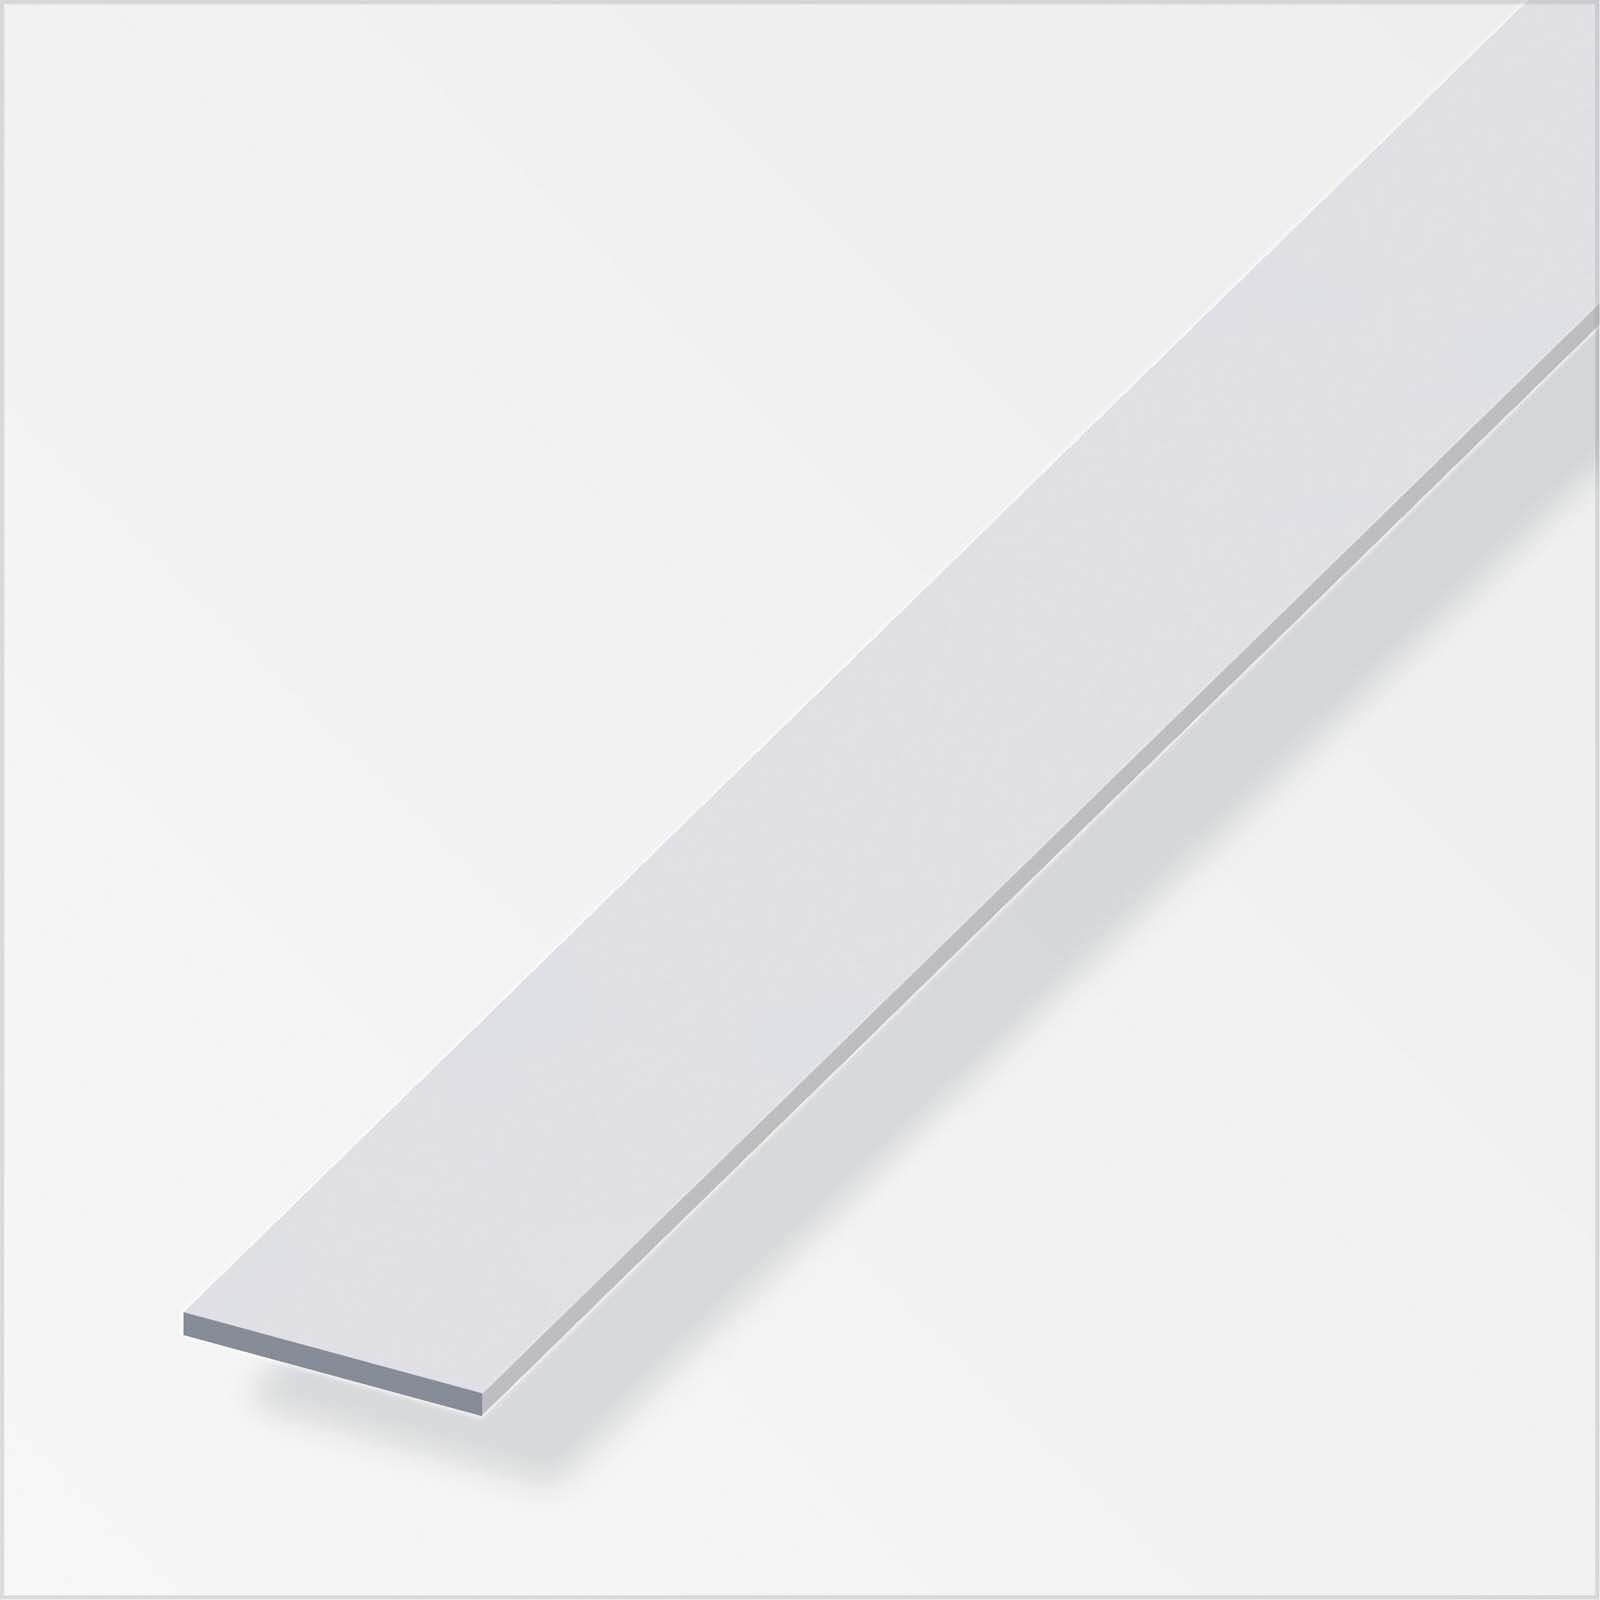 Anodised Aluminium Flat Bar Profile - 2m x 25mm